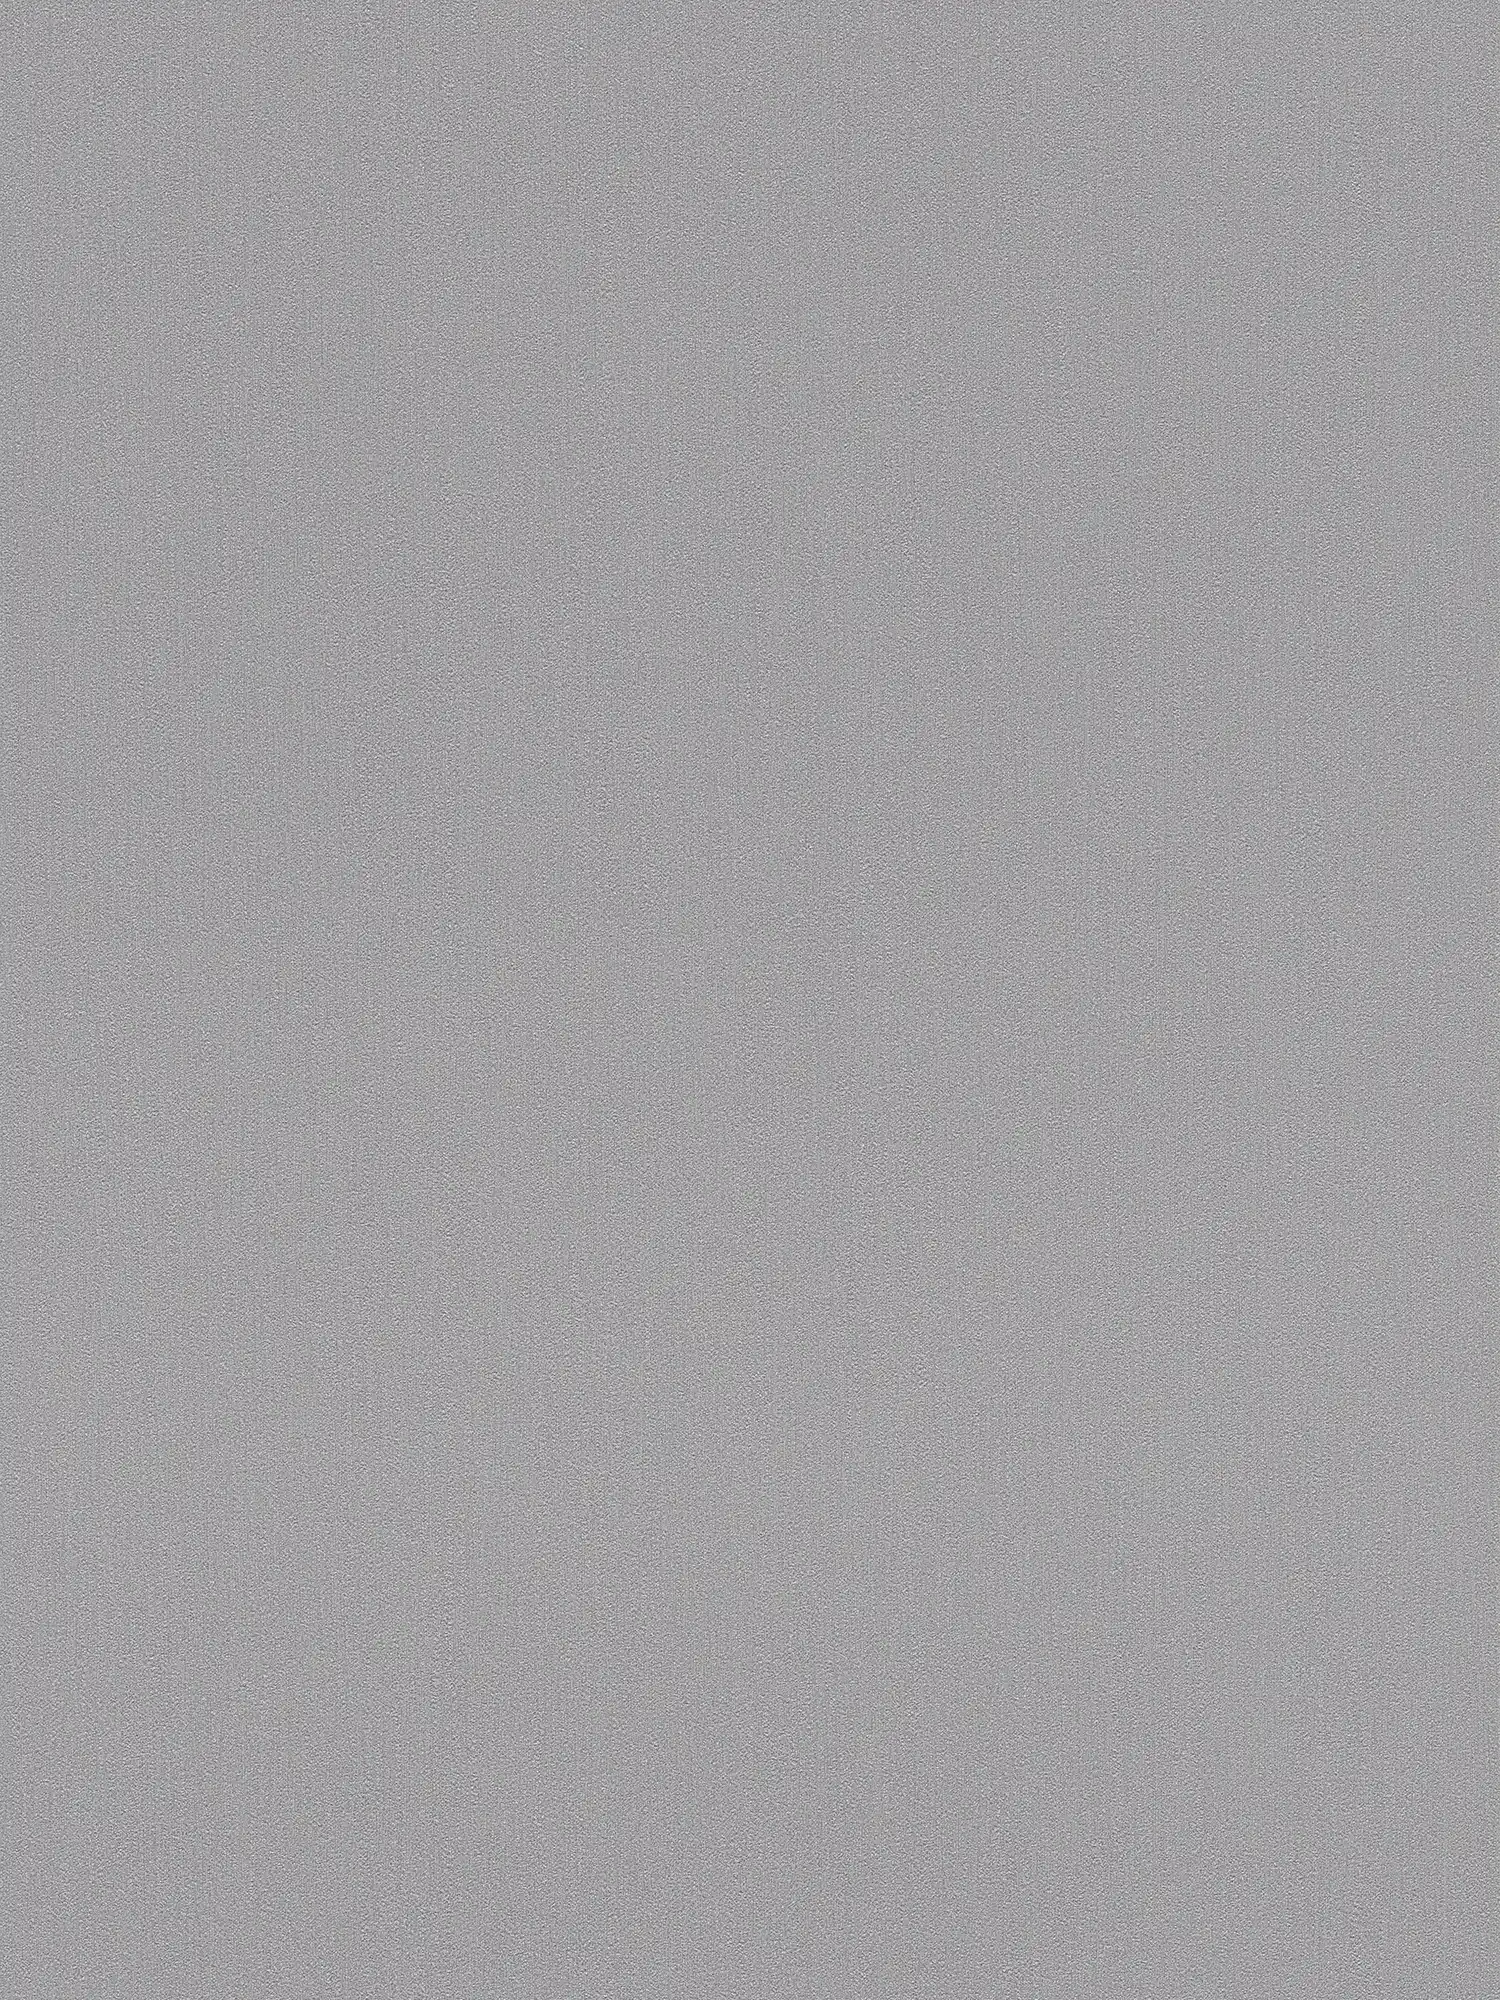 Papel pintado Karl LAGERFELD monocromo con textura - gris
